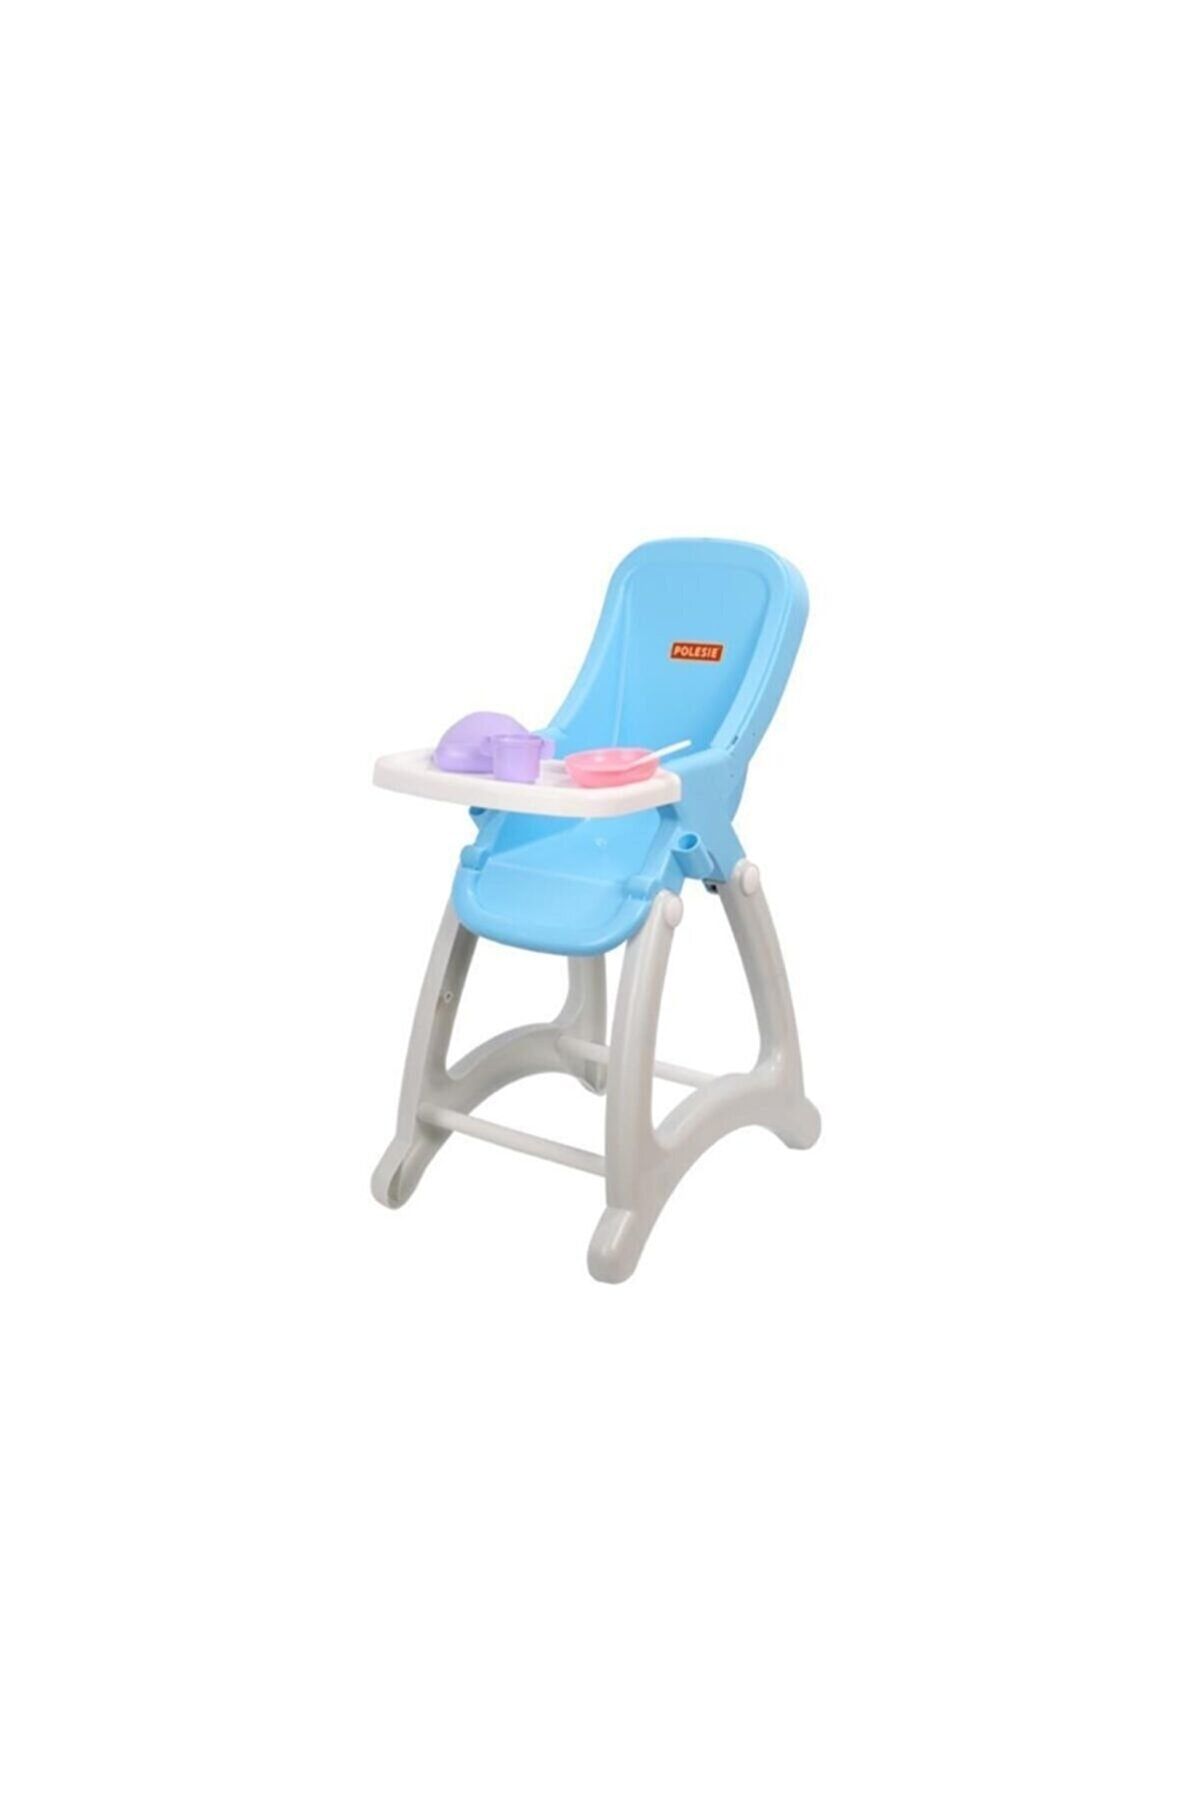 İlerigrup Oyuncak Bebek Mama Sandalyesi